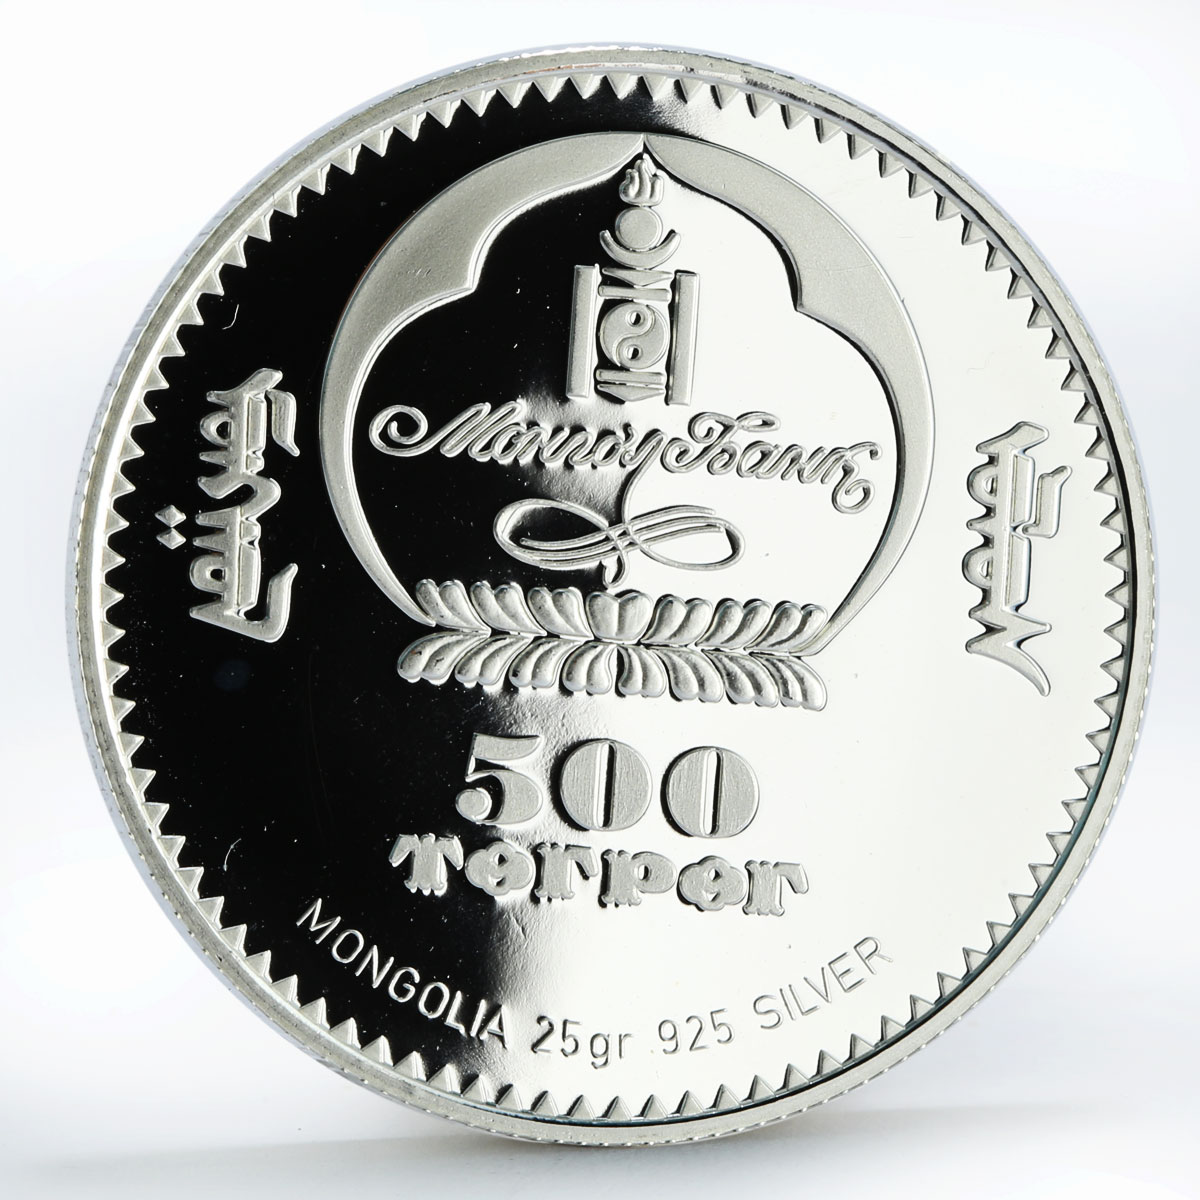 Mongolia 500 togrog Eurasian Owl Bubo silver coin 2005